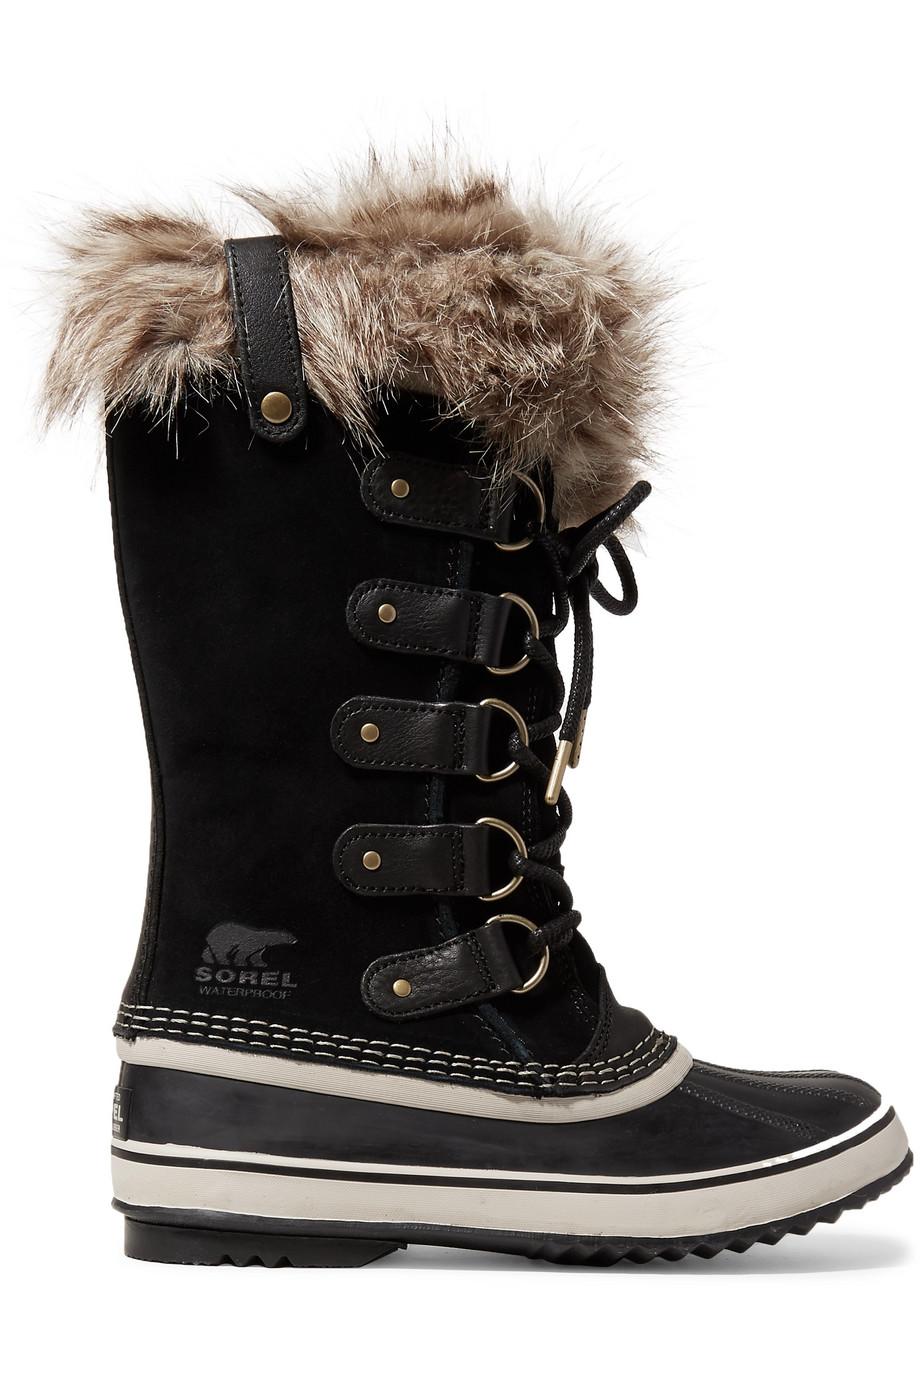 Buy > furry waterproof boots > in stock